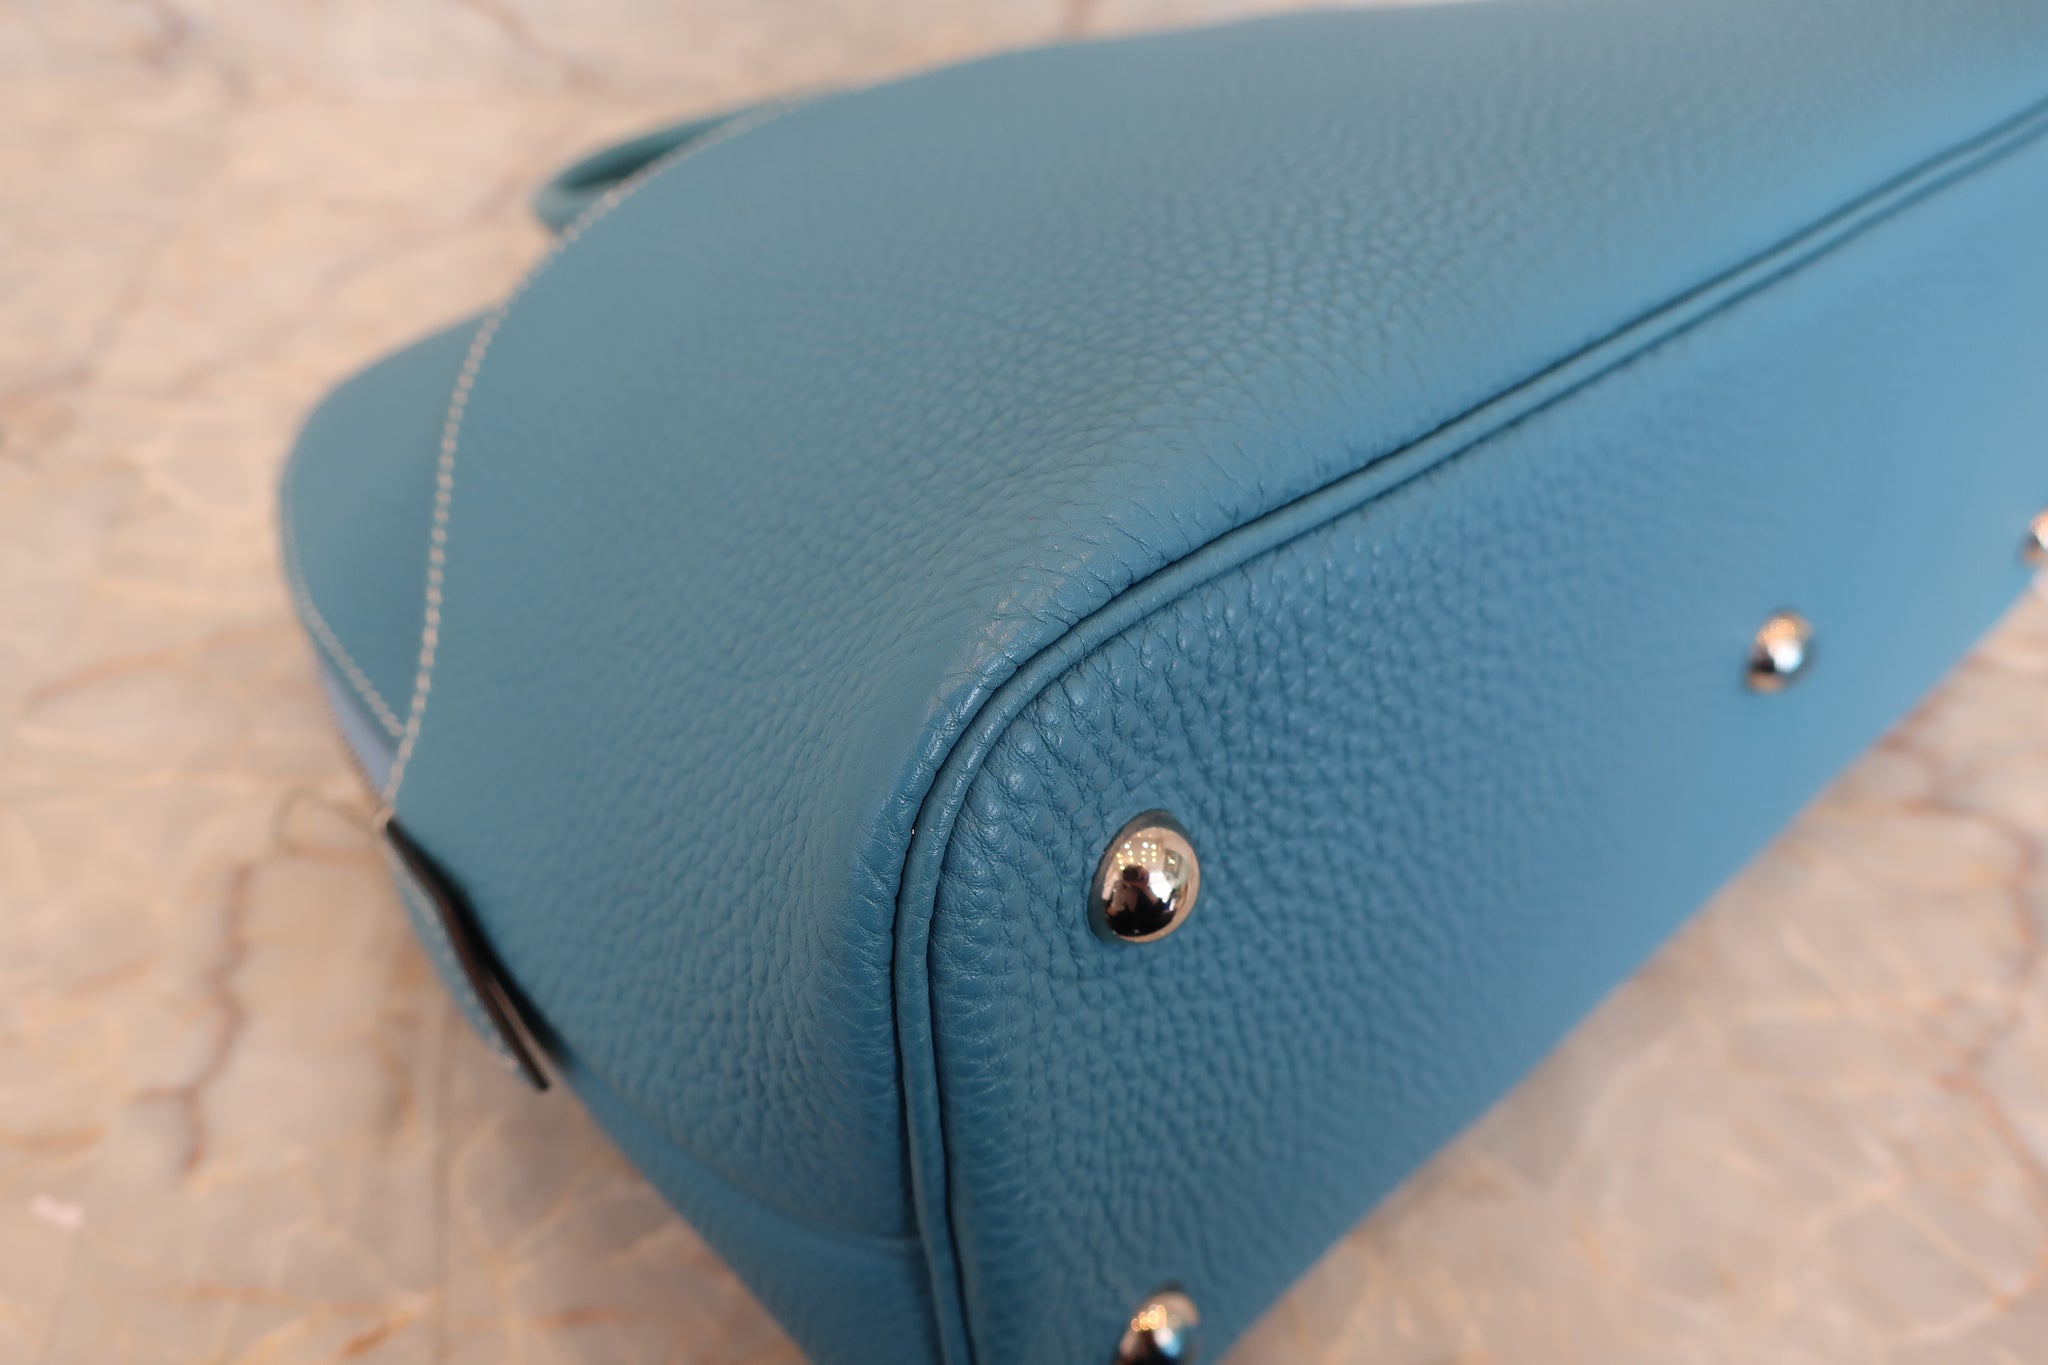 Hermès Bolide Handbag 376255